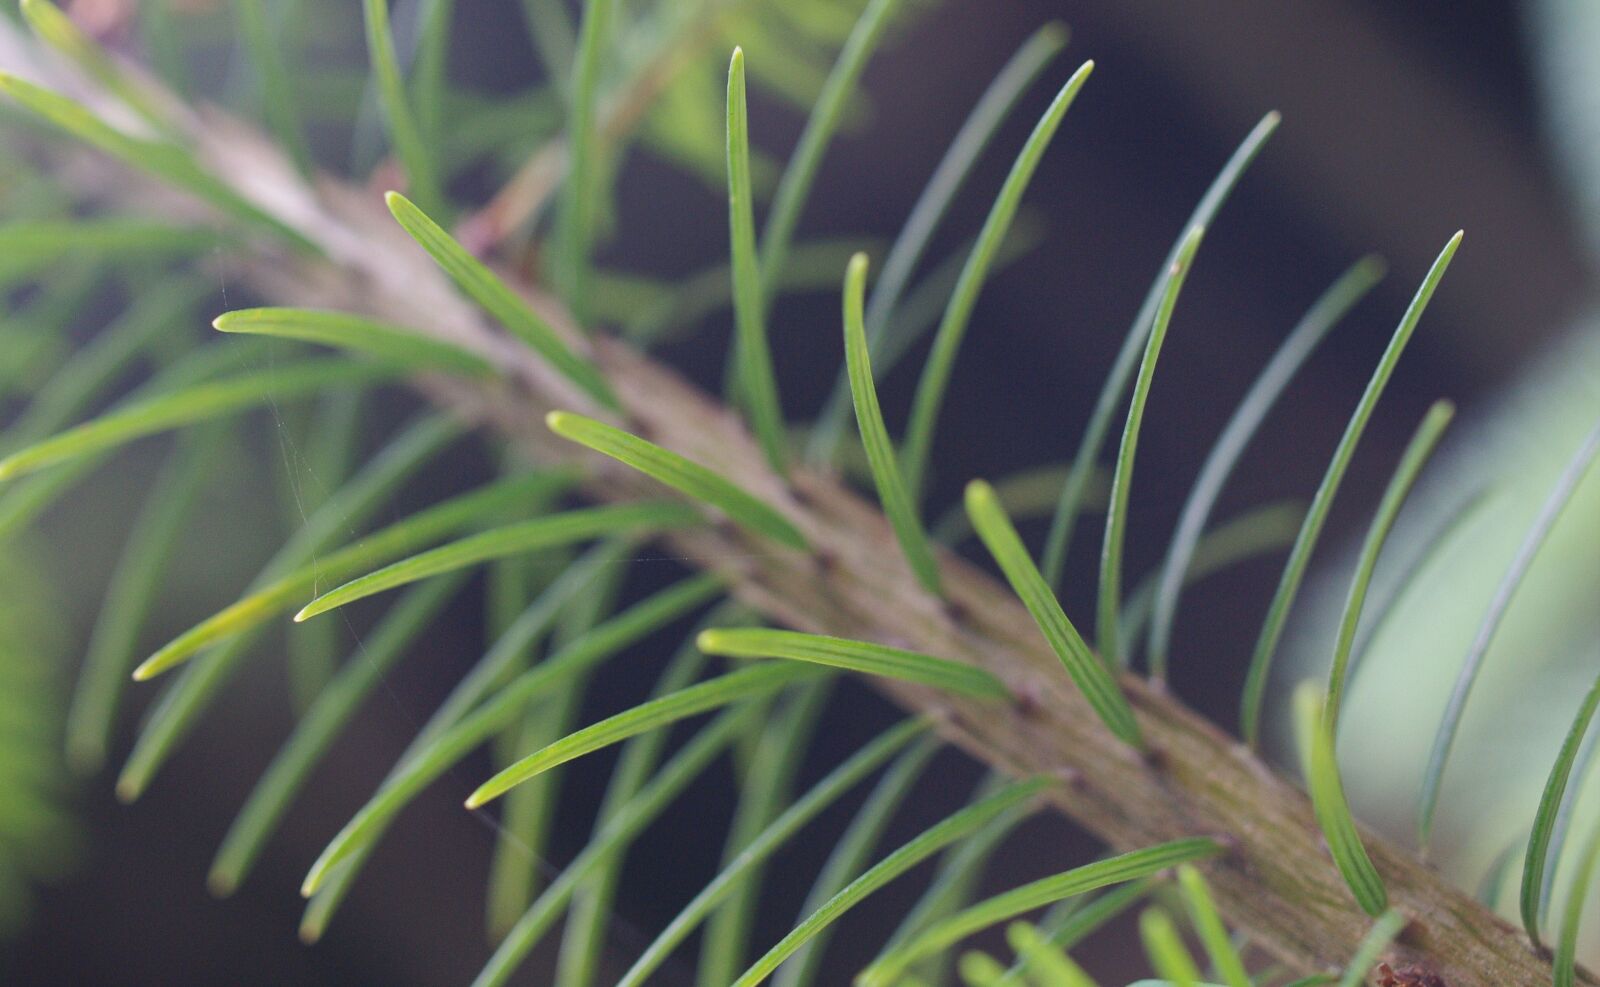 Pentax K-7 sample photo. Thorns, branch, fir photography